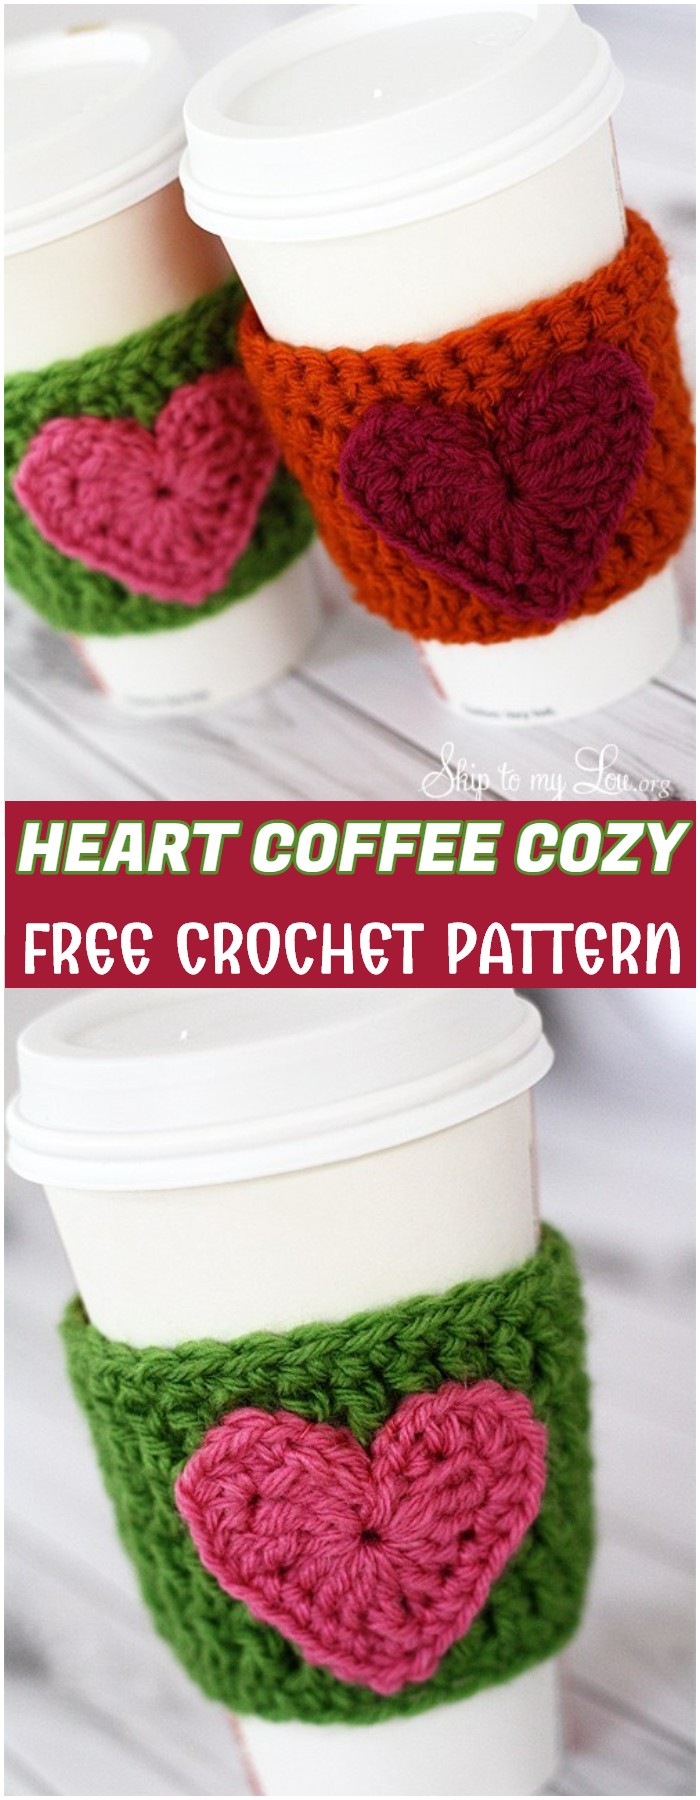 Crochet Heart Coffee Cozy